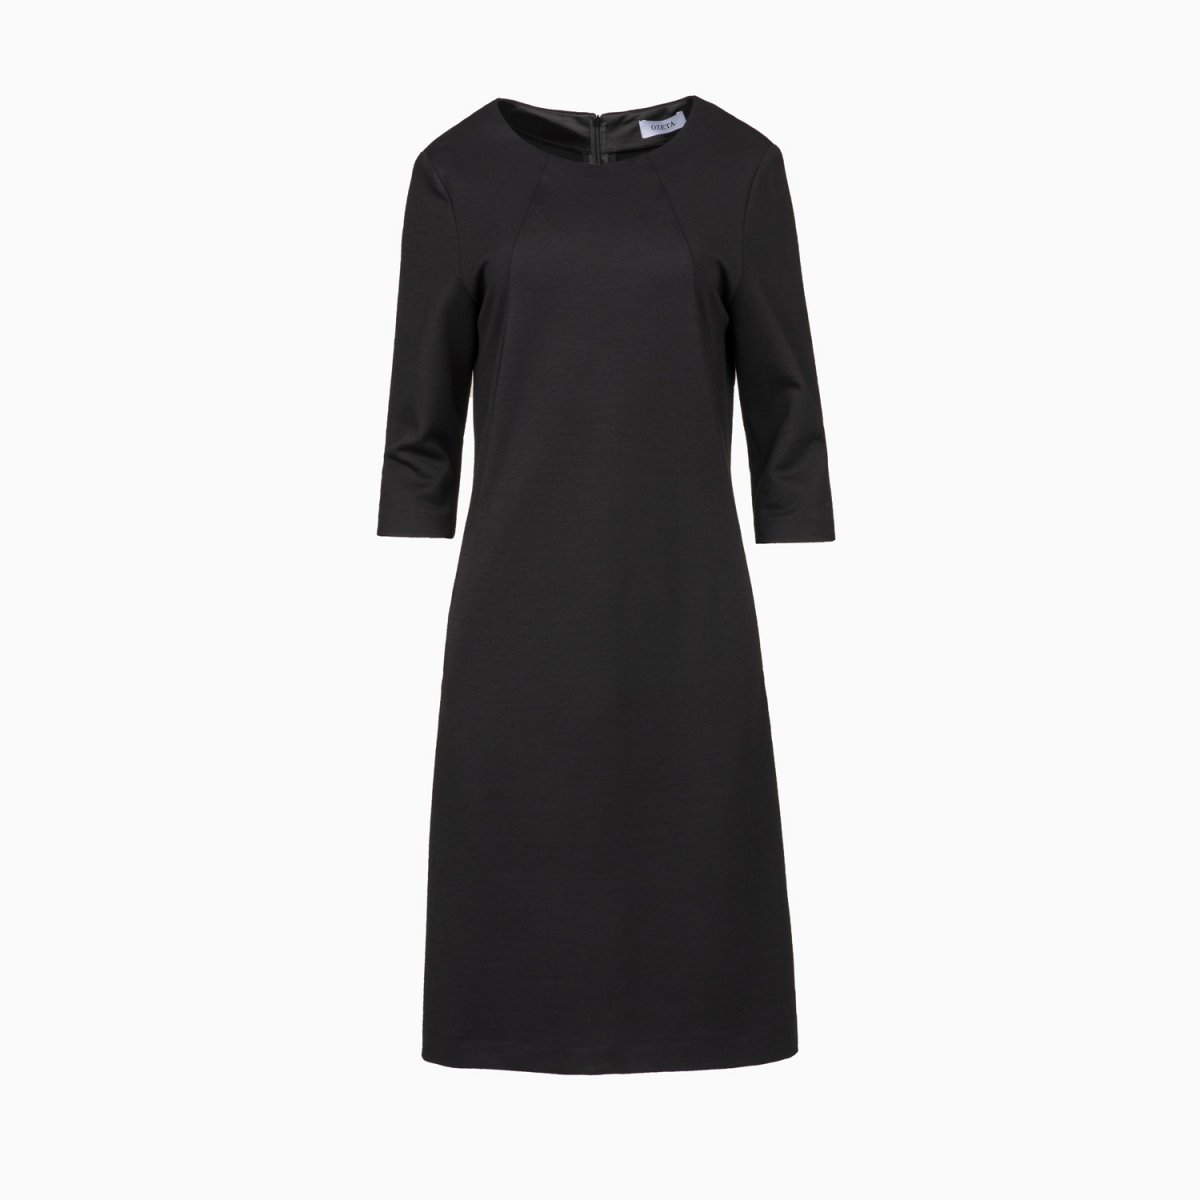 Gestricktes Etui-Kleid mit rundem Ausschnitt in schwarz - Regular Fit